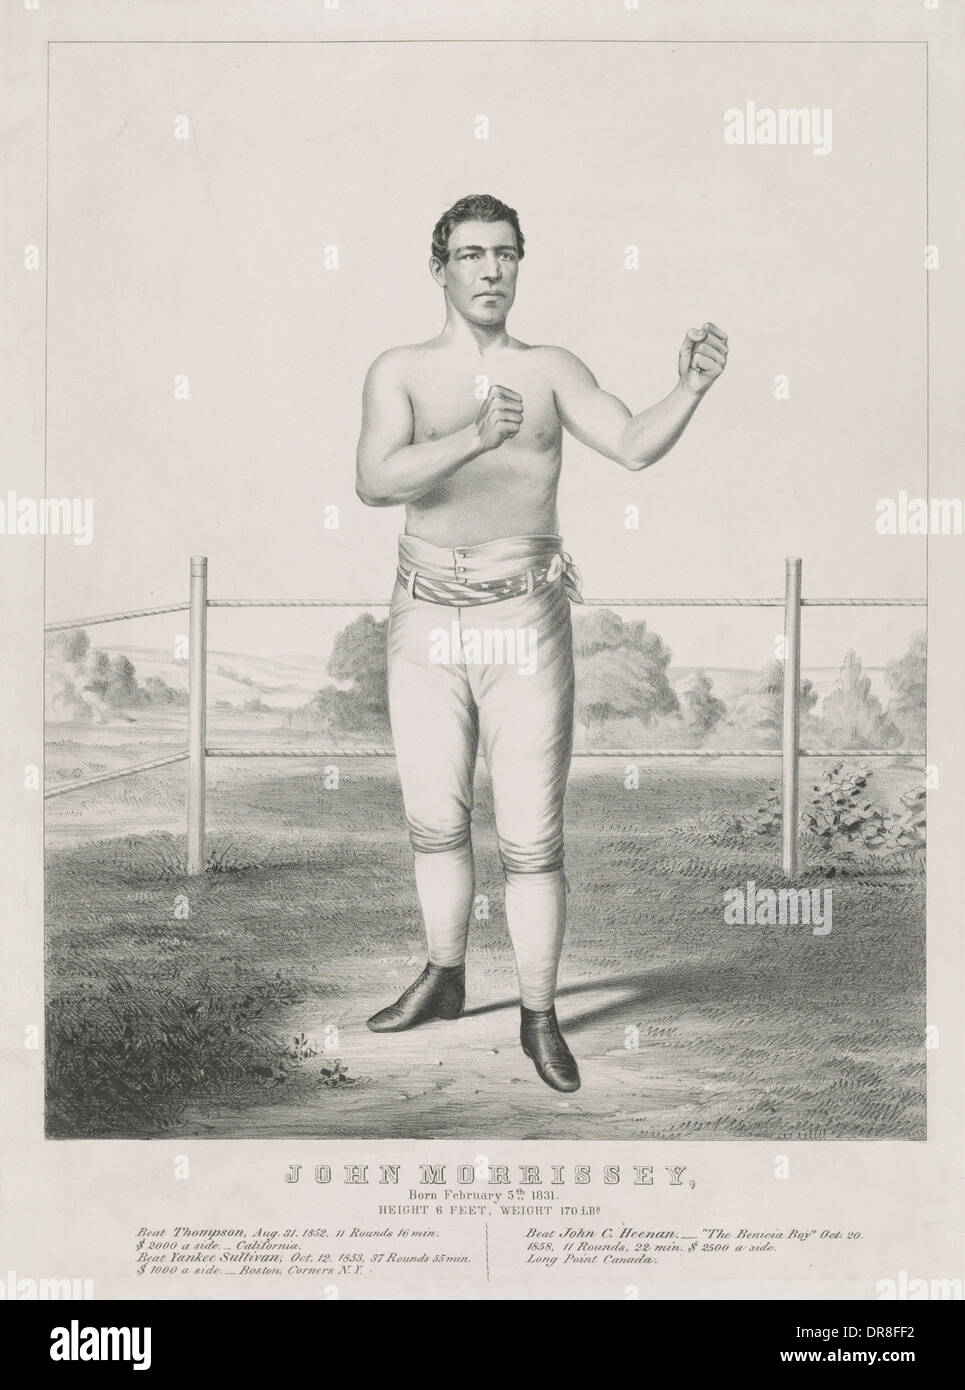 John Morrissey: nato il 5 febbraio 1831. altezza 6 piedi. Peso 170 libbre a  nudo il fuso a snodo boxer, nel 1860 circa Foto stock - Alamy